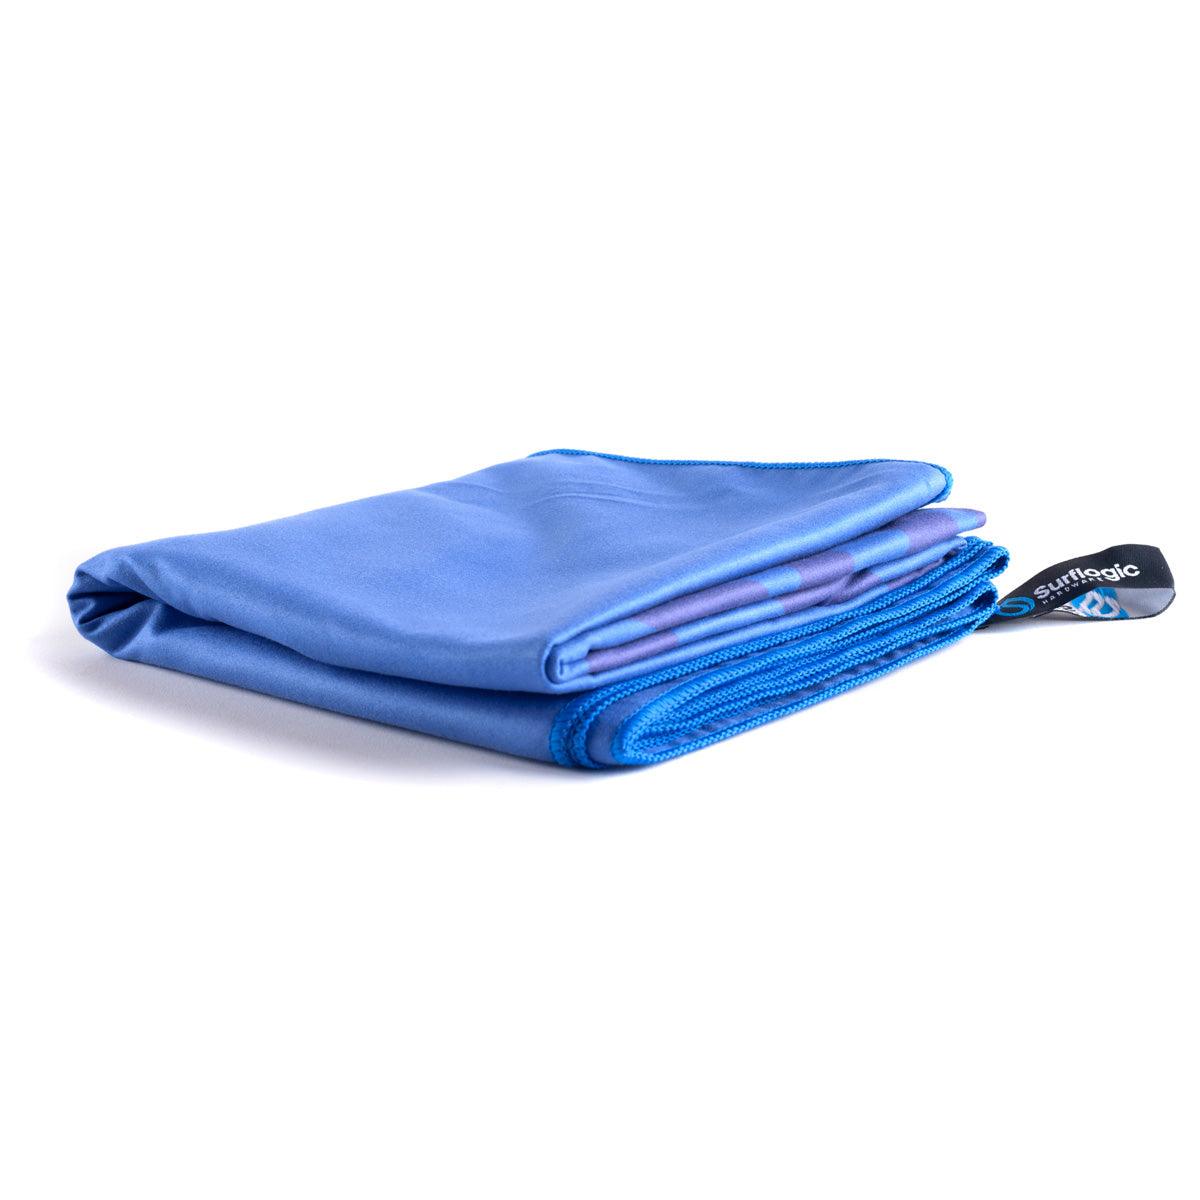 Surflogic Quick-Dry Microfibre Towel - Kiteshop.com